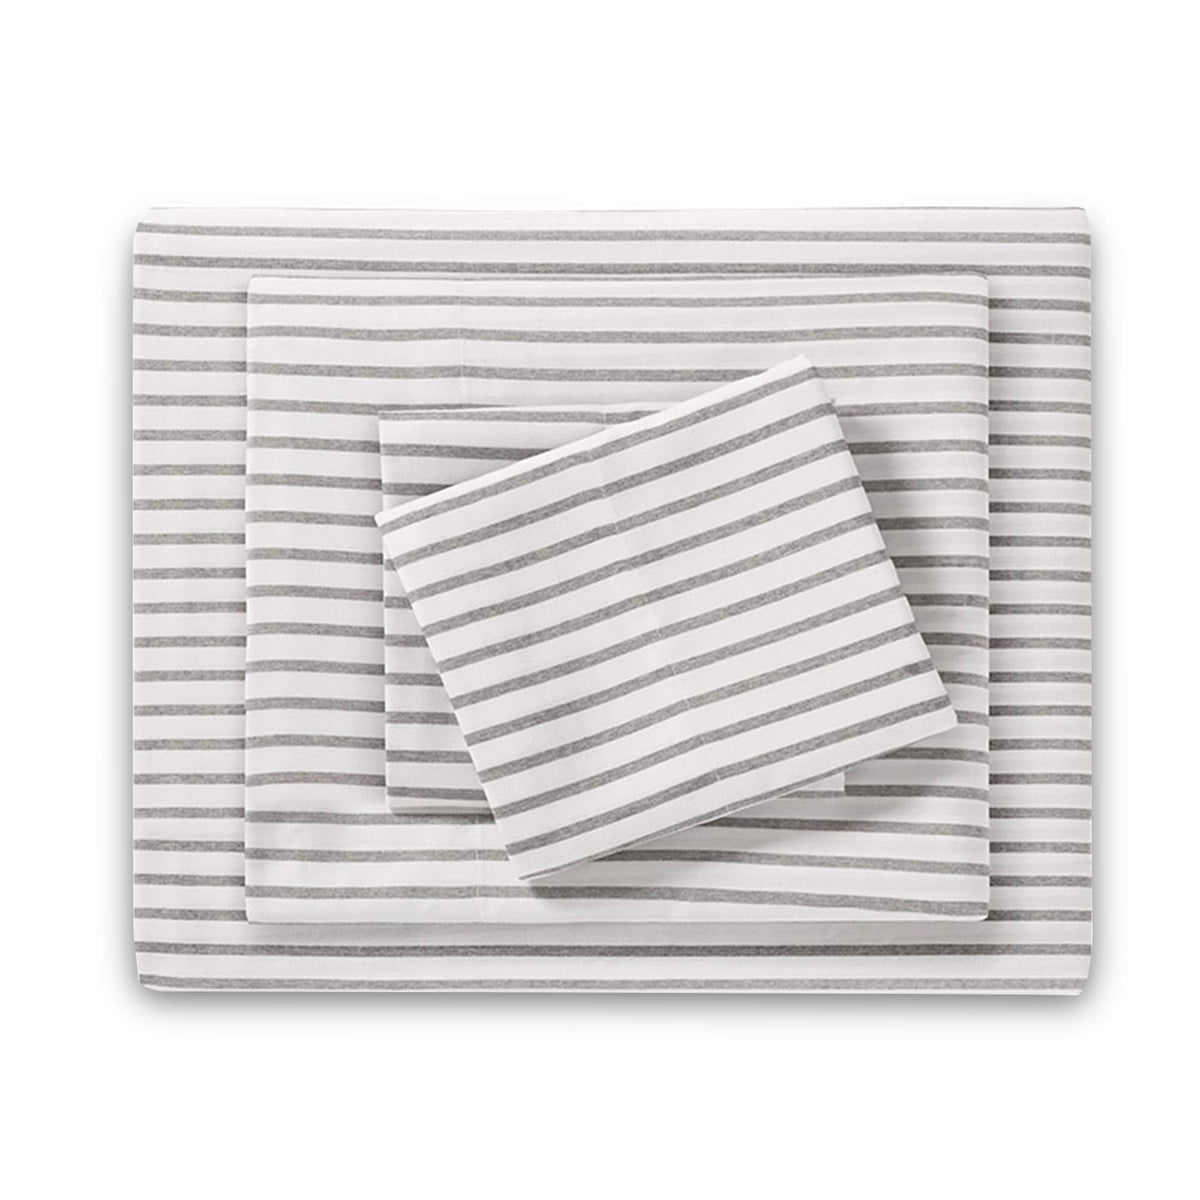 HONEYMOON 3 PC Bed Sheet Set - Flat Sheet, Fitted Sheet, Pillow Case -  Twin XL, Gray StripeS